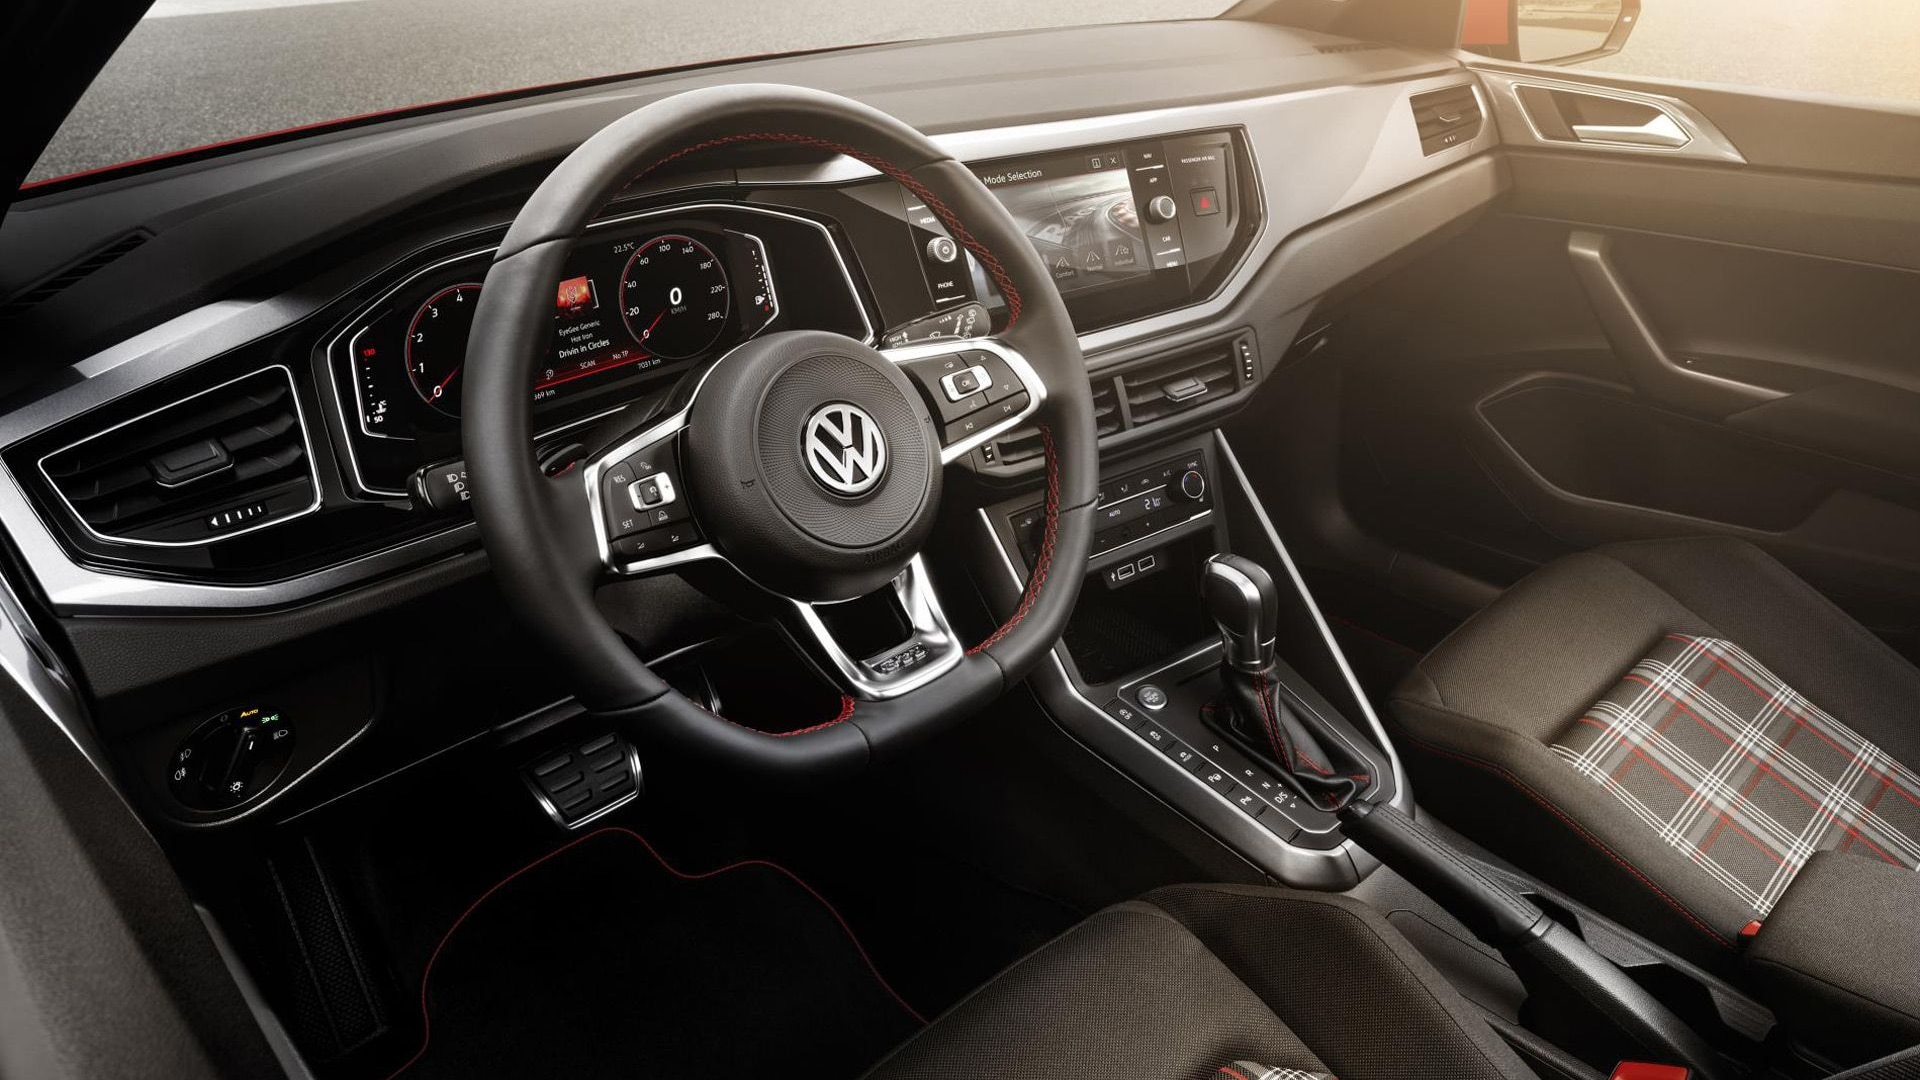 Cokes bom kolf 2018 Volkswagen Polo revealed, GTI packs 197 horsepower